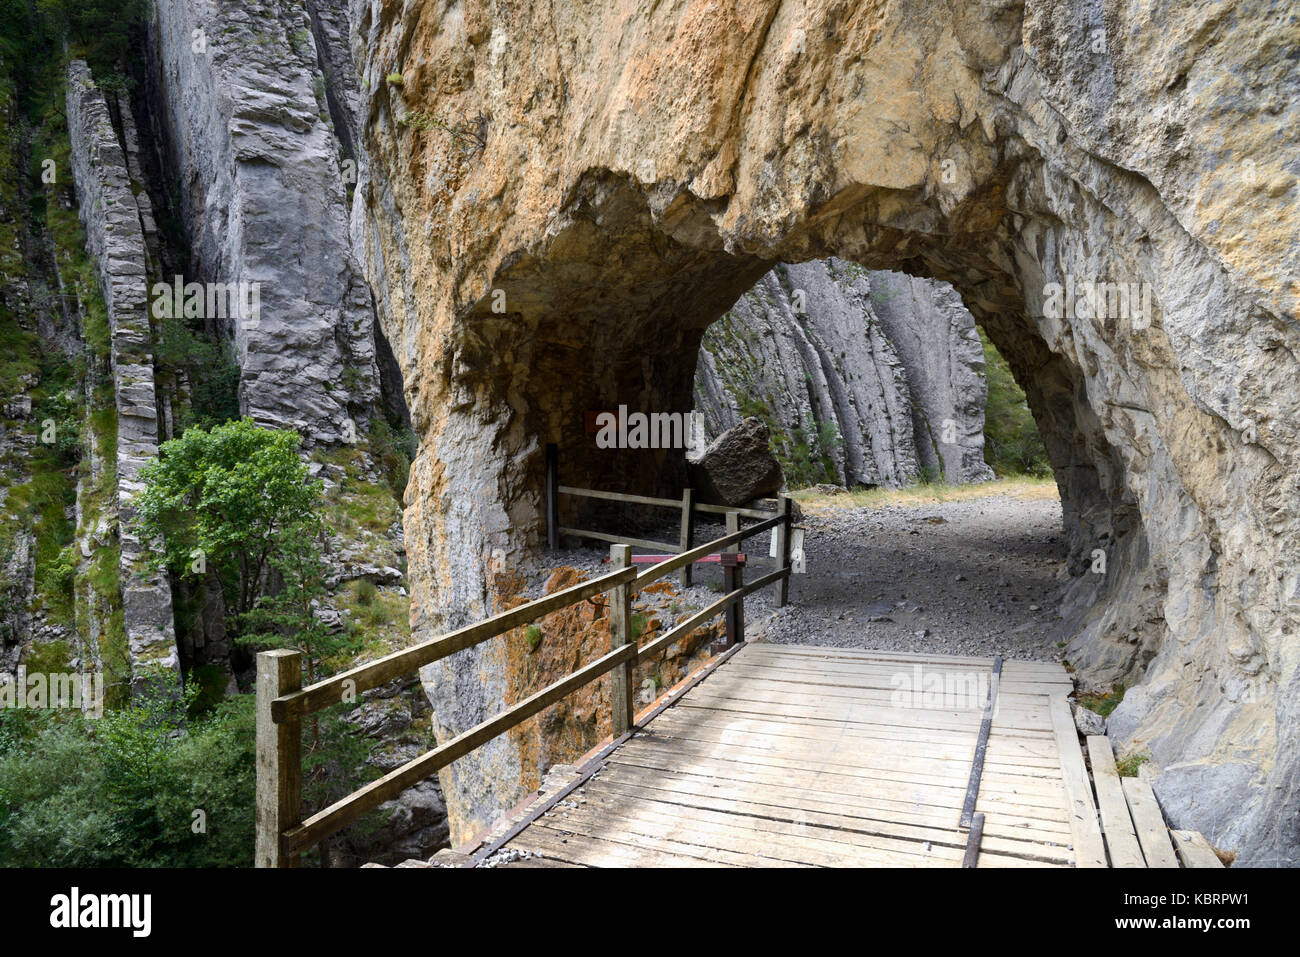 Sentier, pont en bois et tunnel rocheux sculpté en pierre à travers le Canyon ou la voie de la peine Tarton Alpes-de-haute-Provence France Banque D'Images